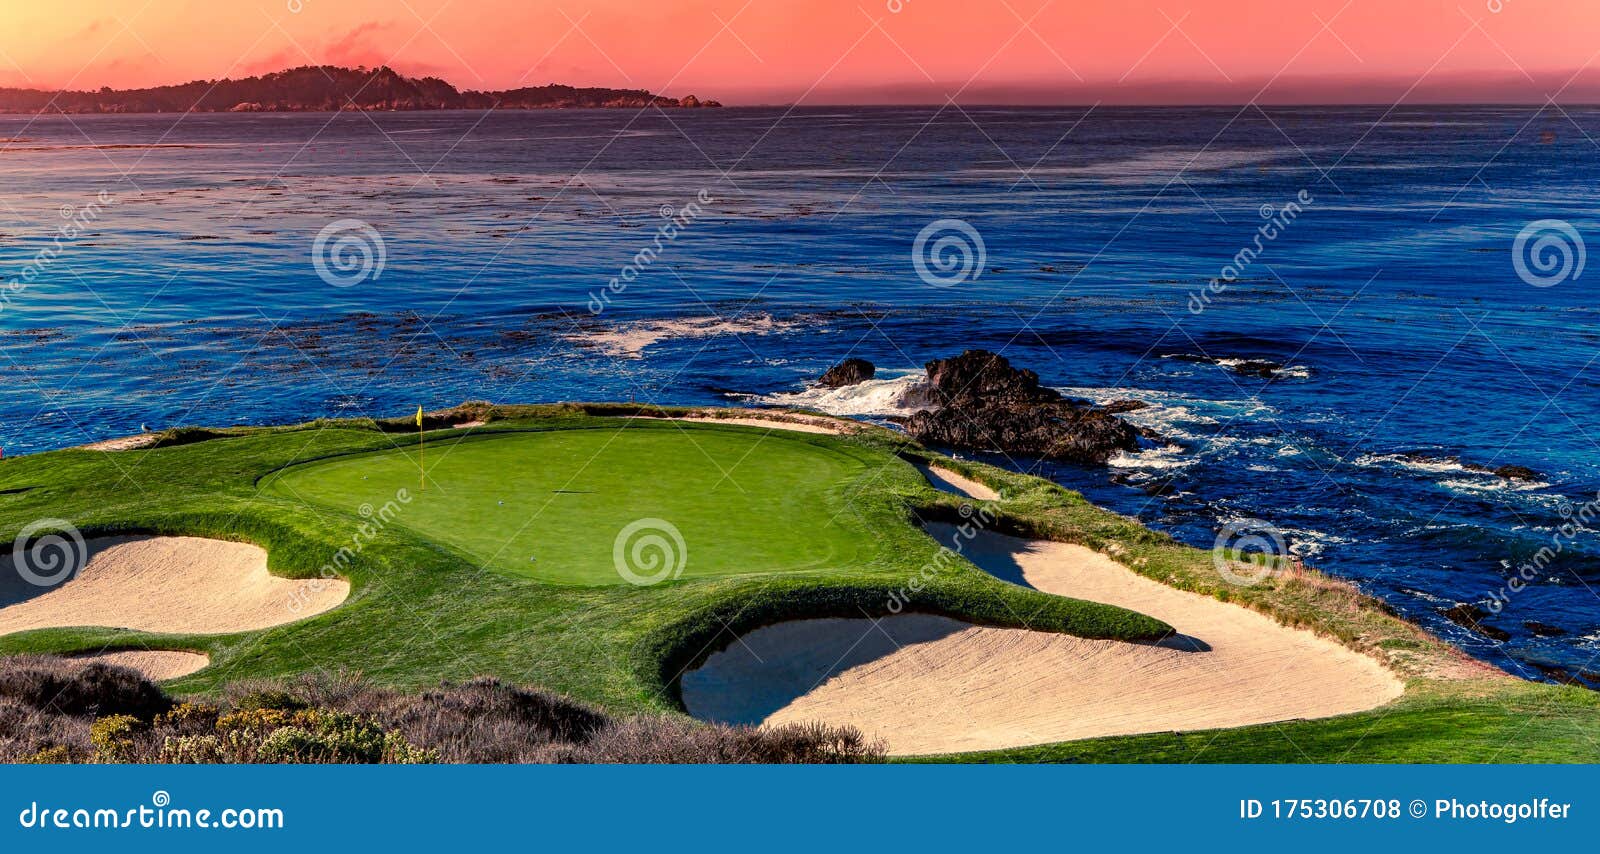 pebble beach golf course, monterey, california, usa